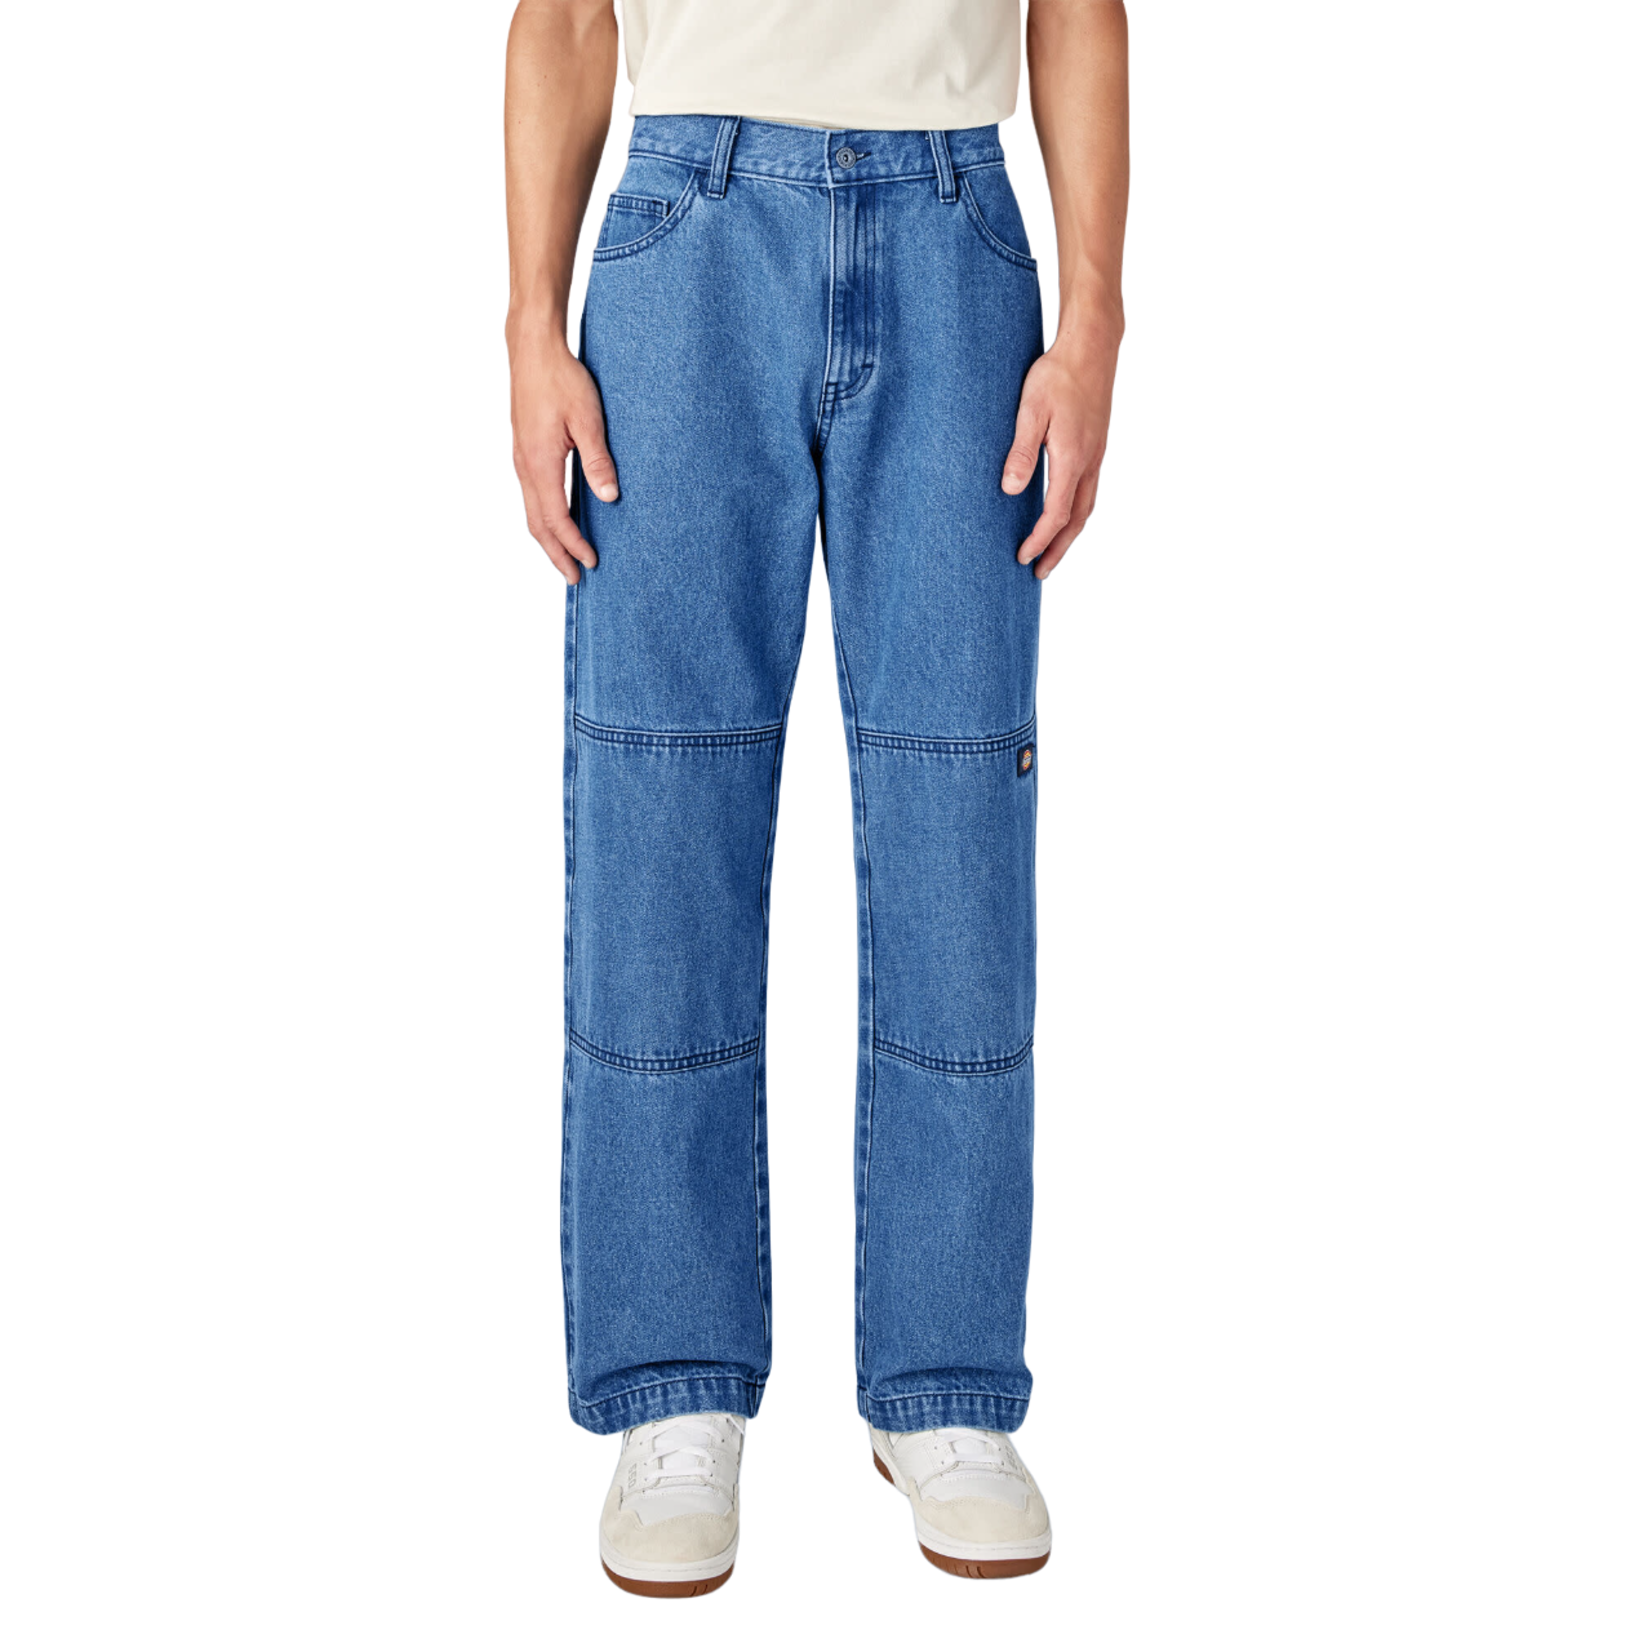 Loose Jeans - Light denim blue - Men | H&M US